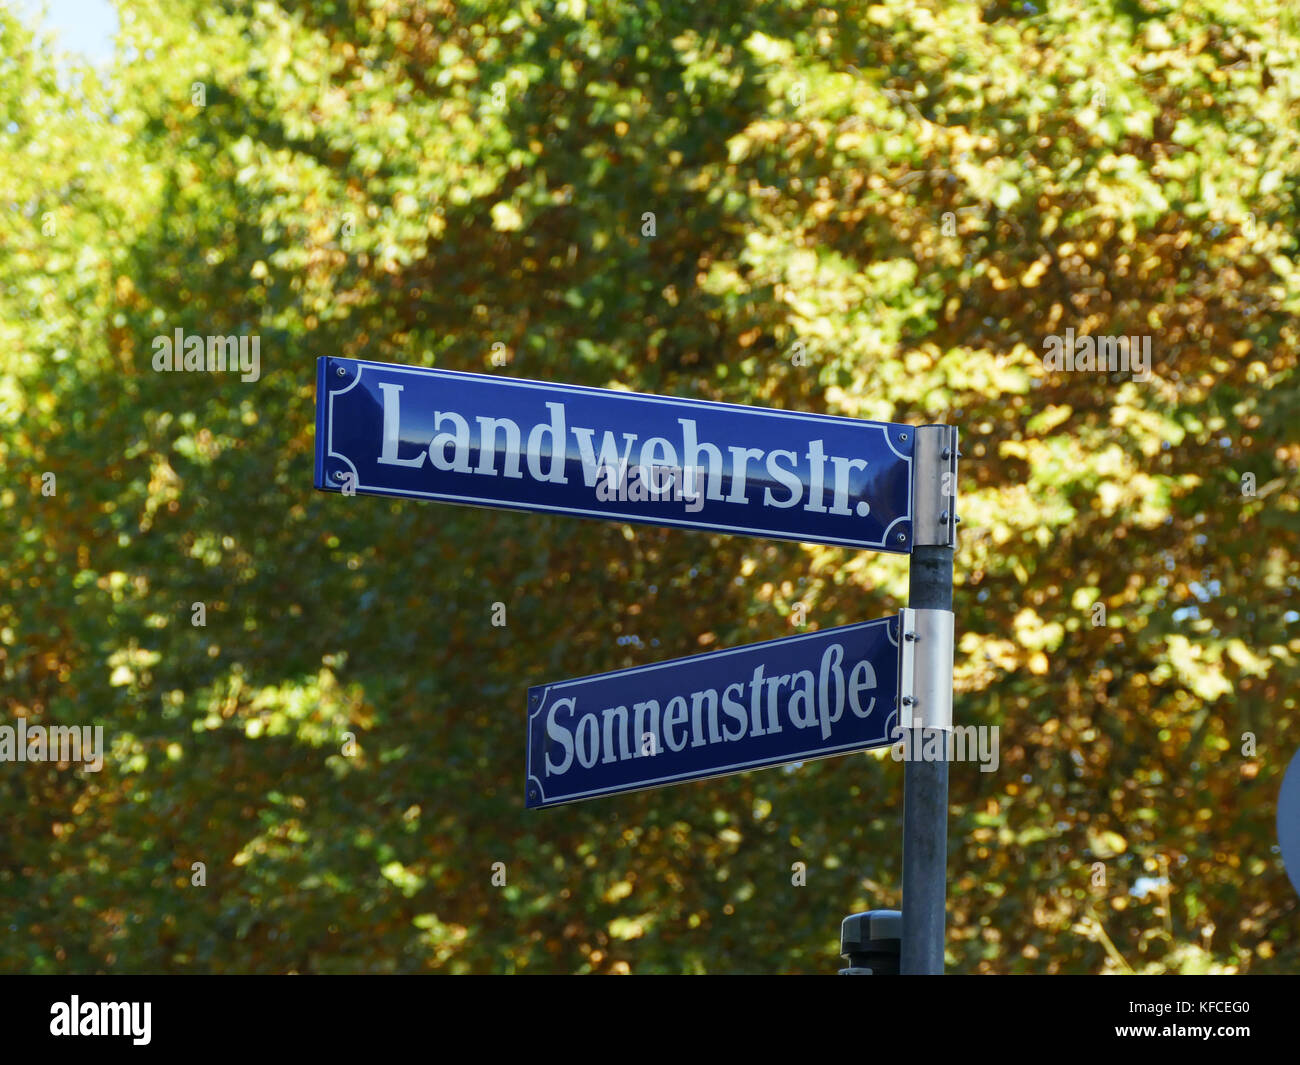 Landwehr street Sonnen Street signs in Munich Germany Europe Stock Photo